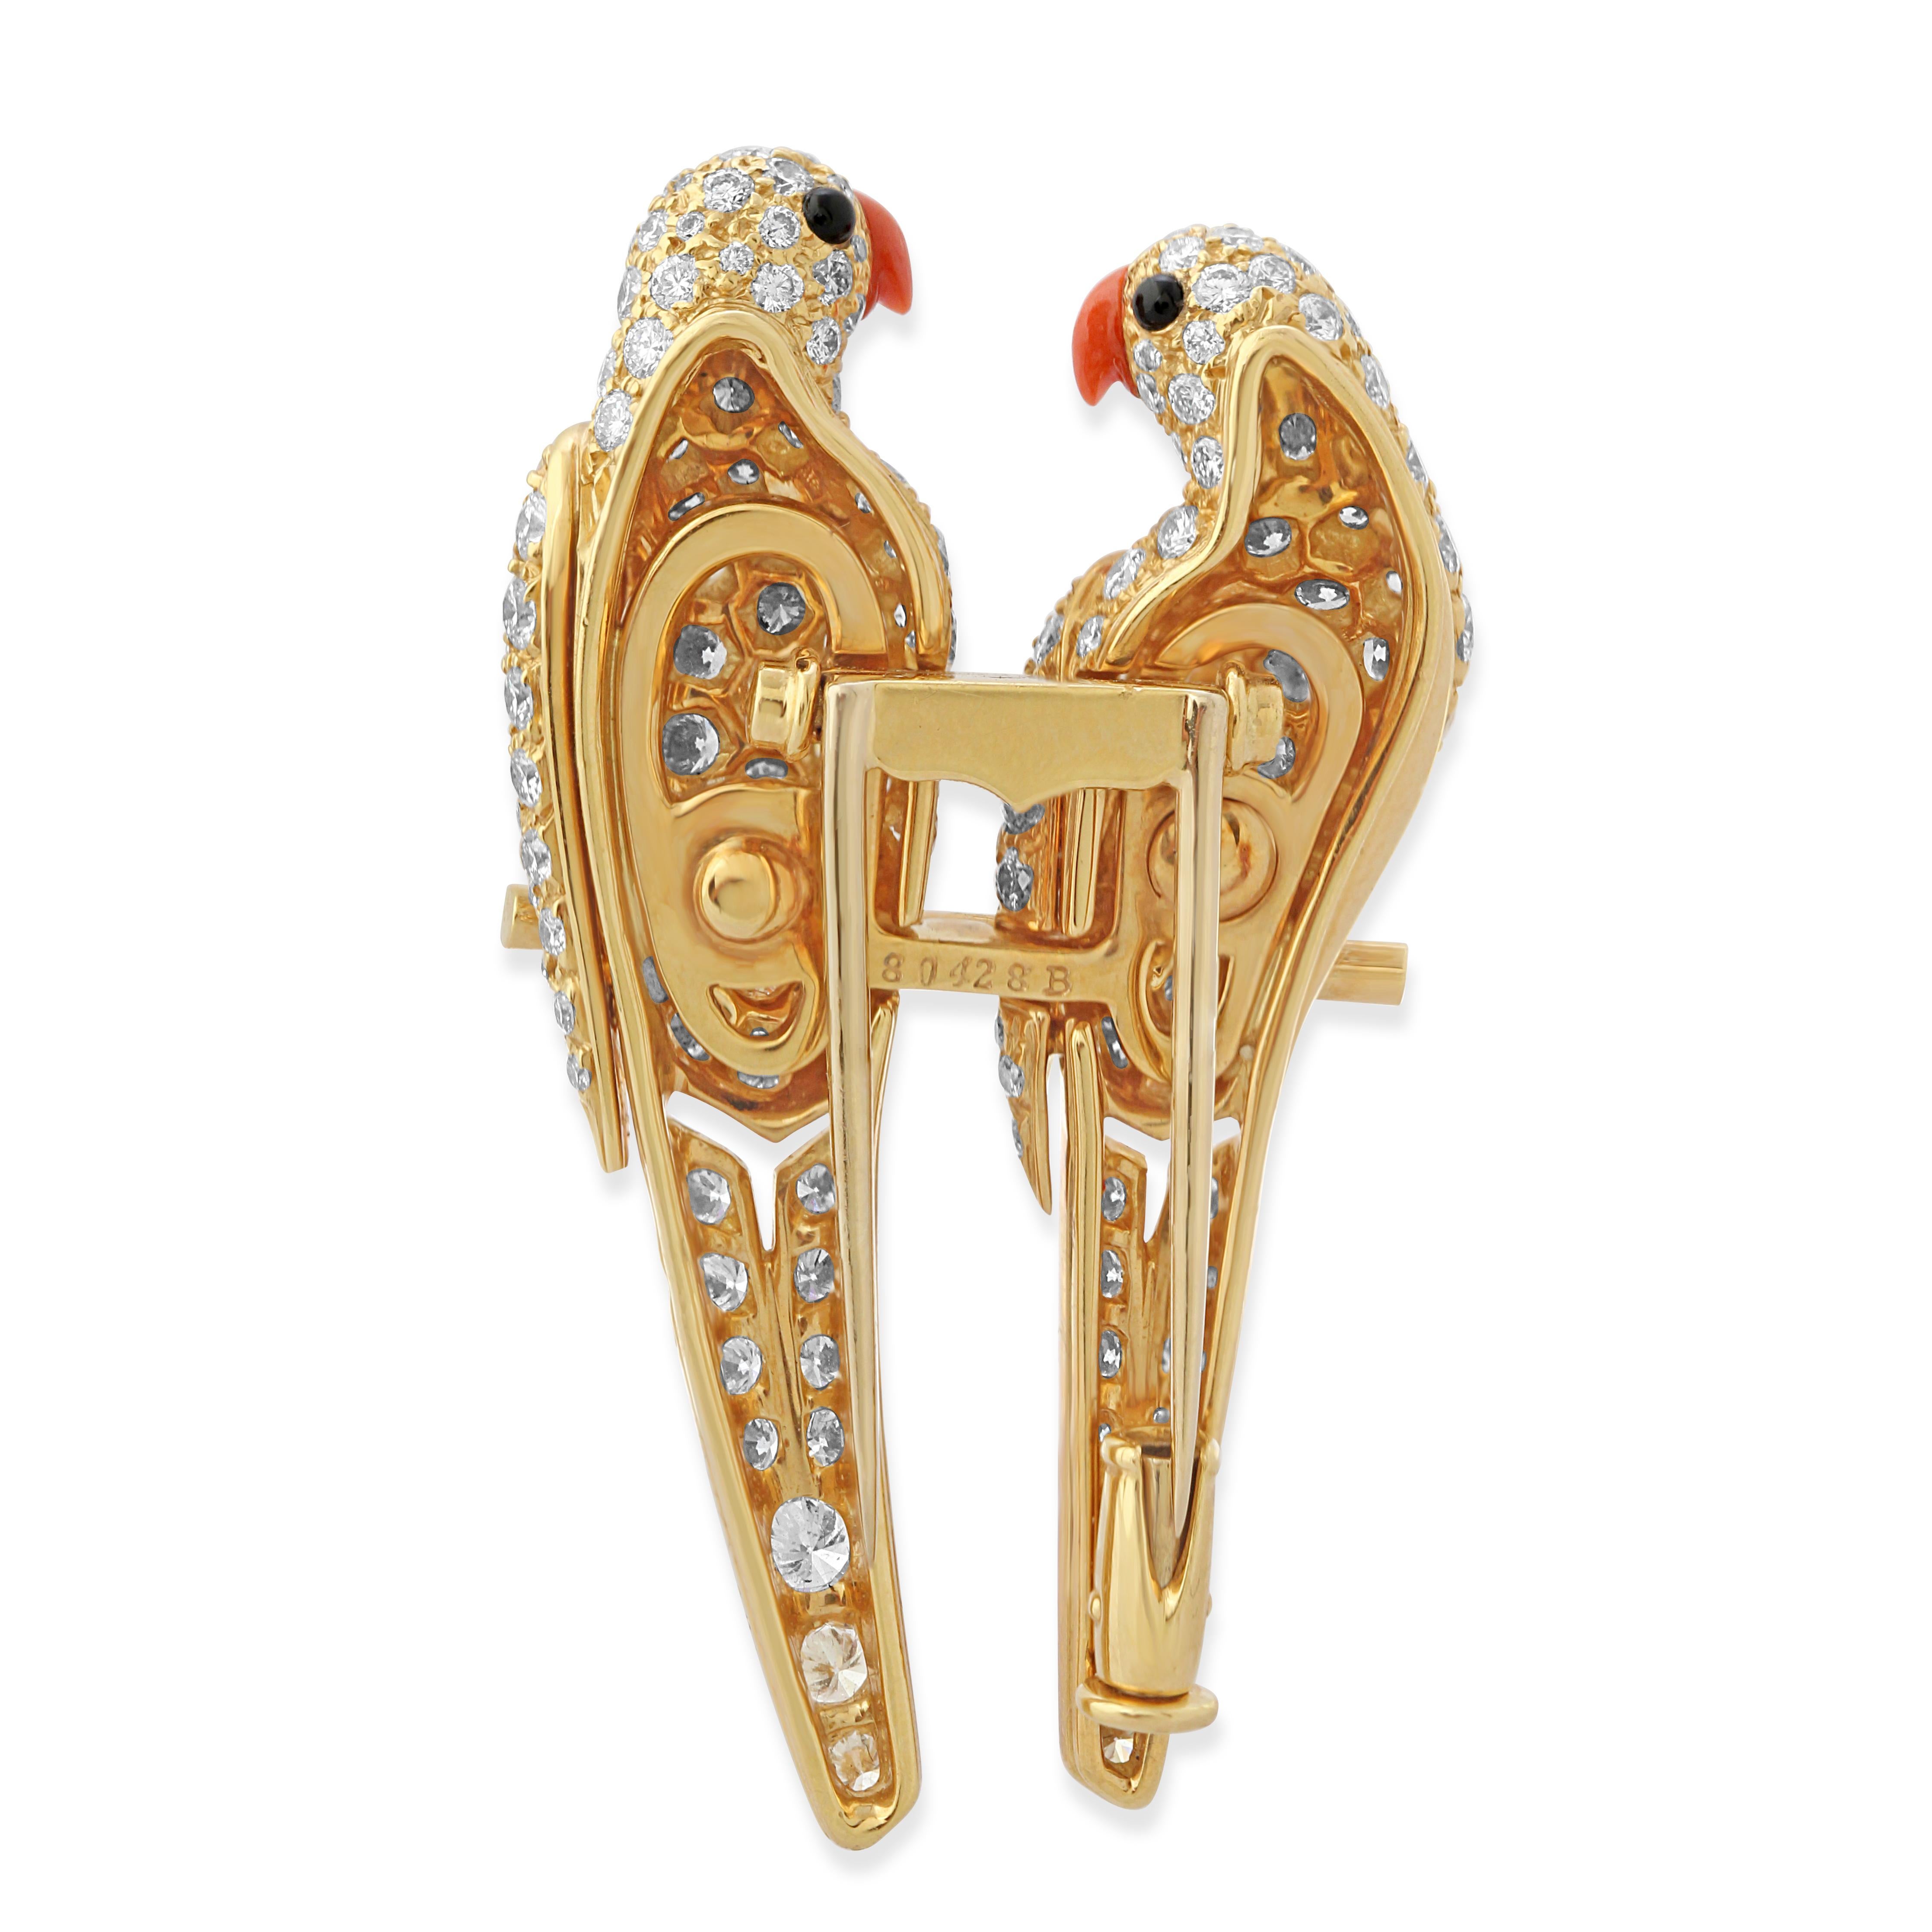 Brilliant Cut Cartier Gold & Diamond Lovebirds Brooch